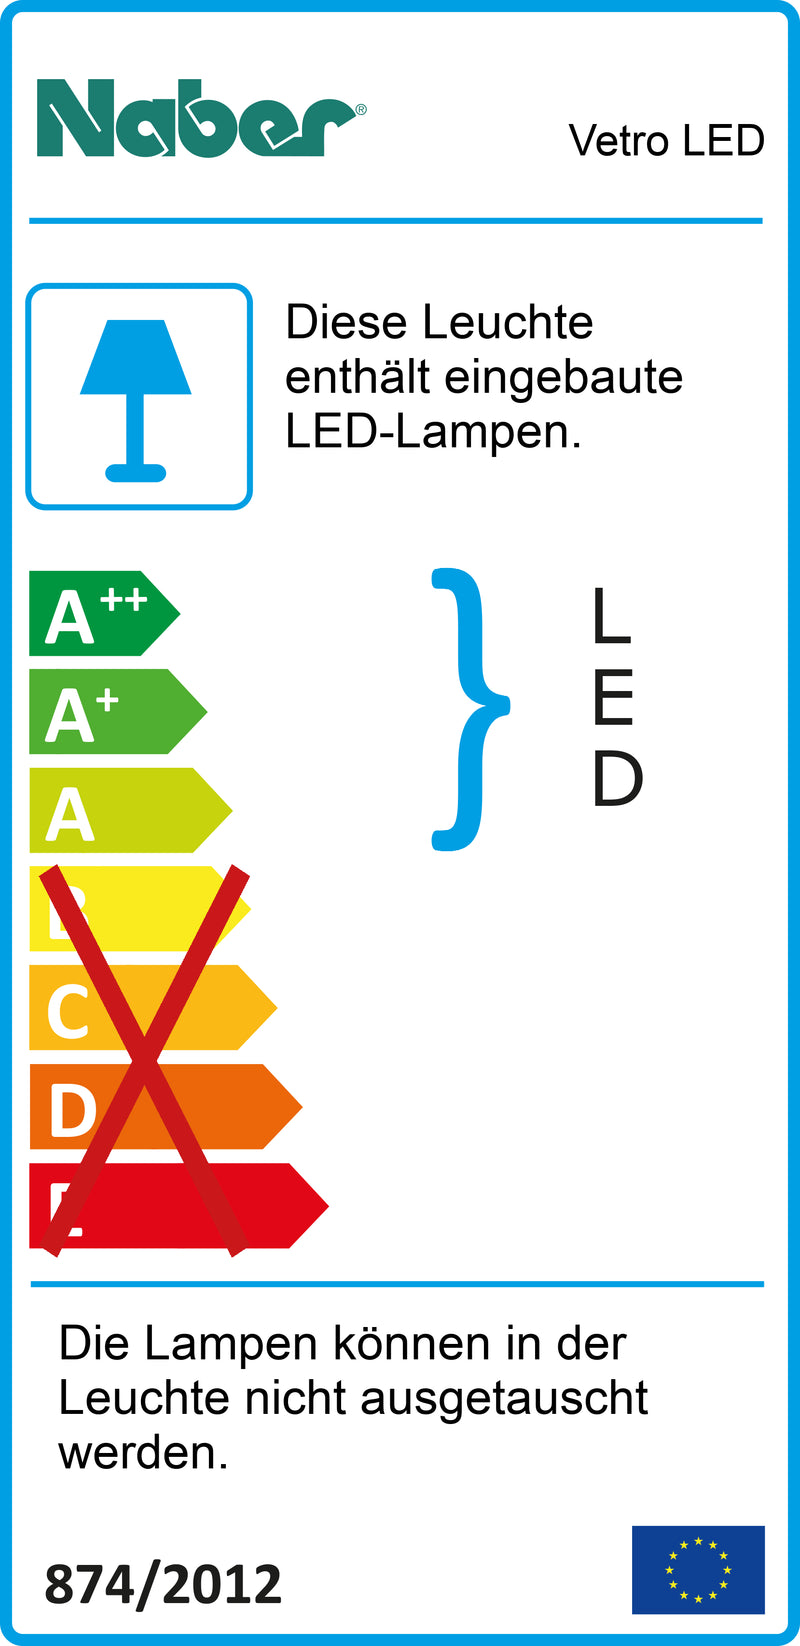 E-Label zu Zeichnung zu Vetro LED als Variante Einzelleuchte m. LED Touch S. D., weiß von Naber GmbH in der Kategorie Lichttechnik in Österreich auf conceptshop.at